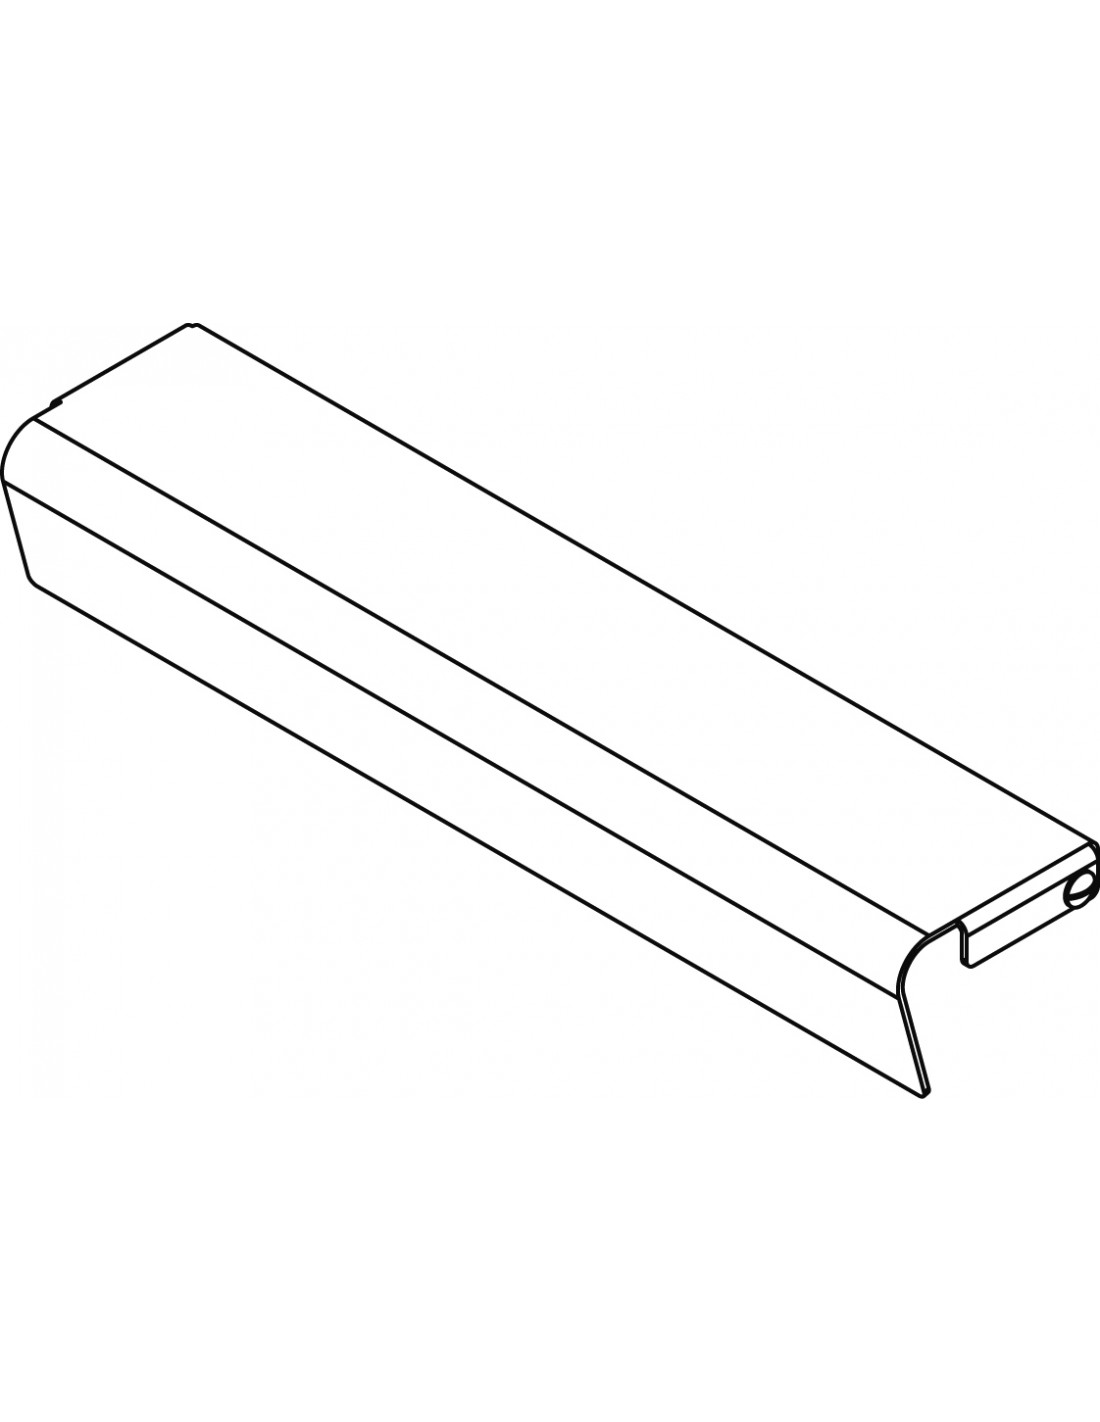 Kit de protección frontal Frytop - Dimensiones cm. 98x 8x 6h